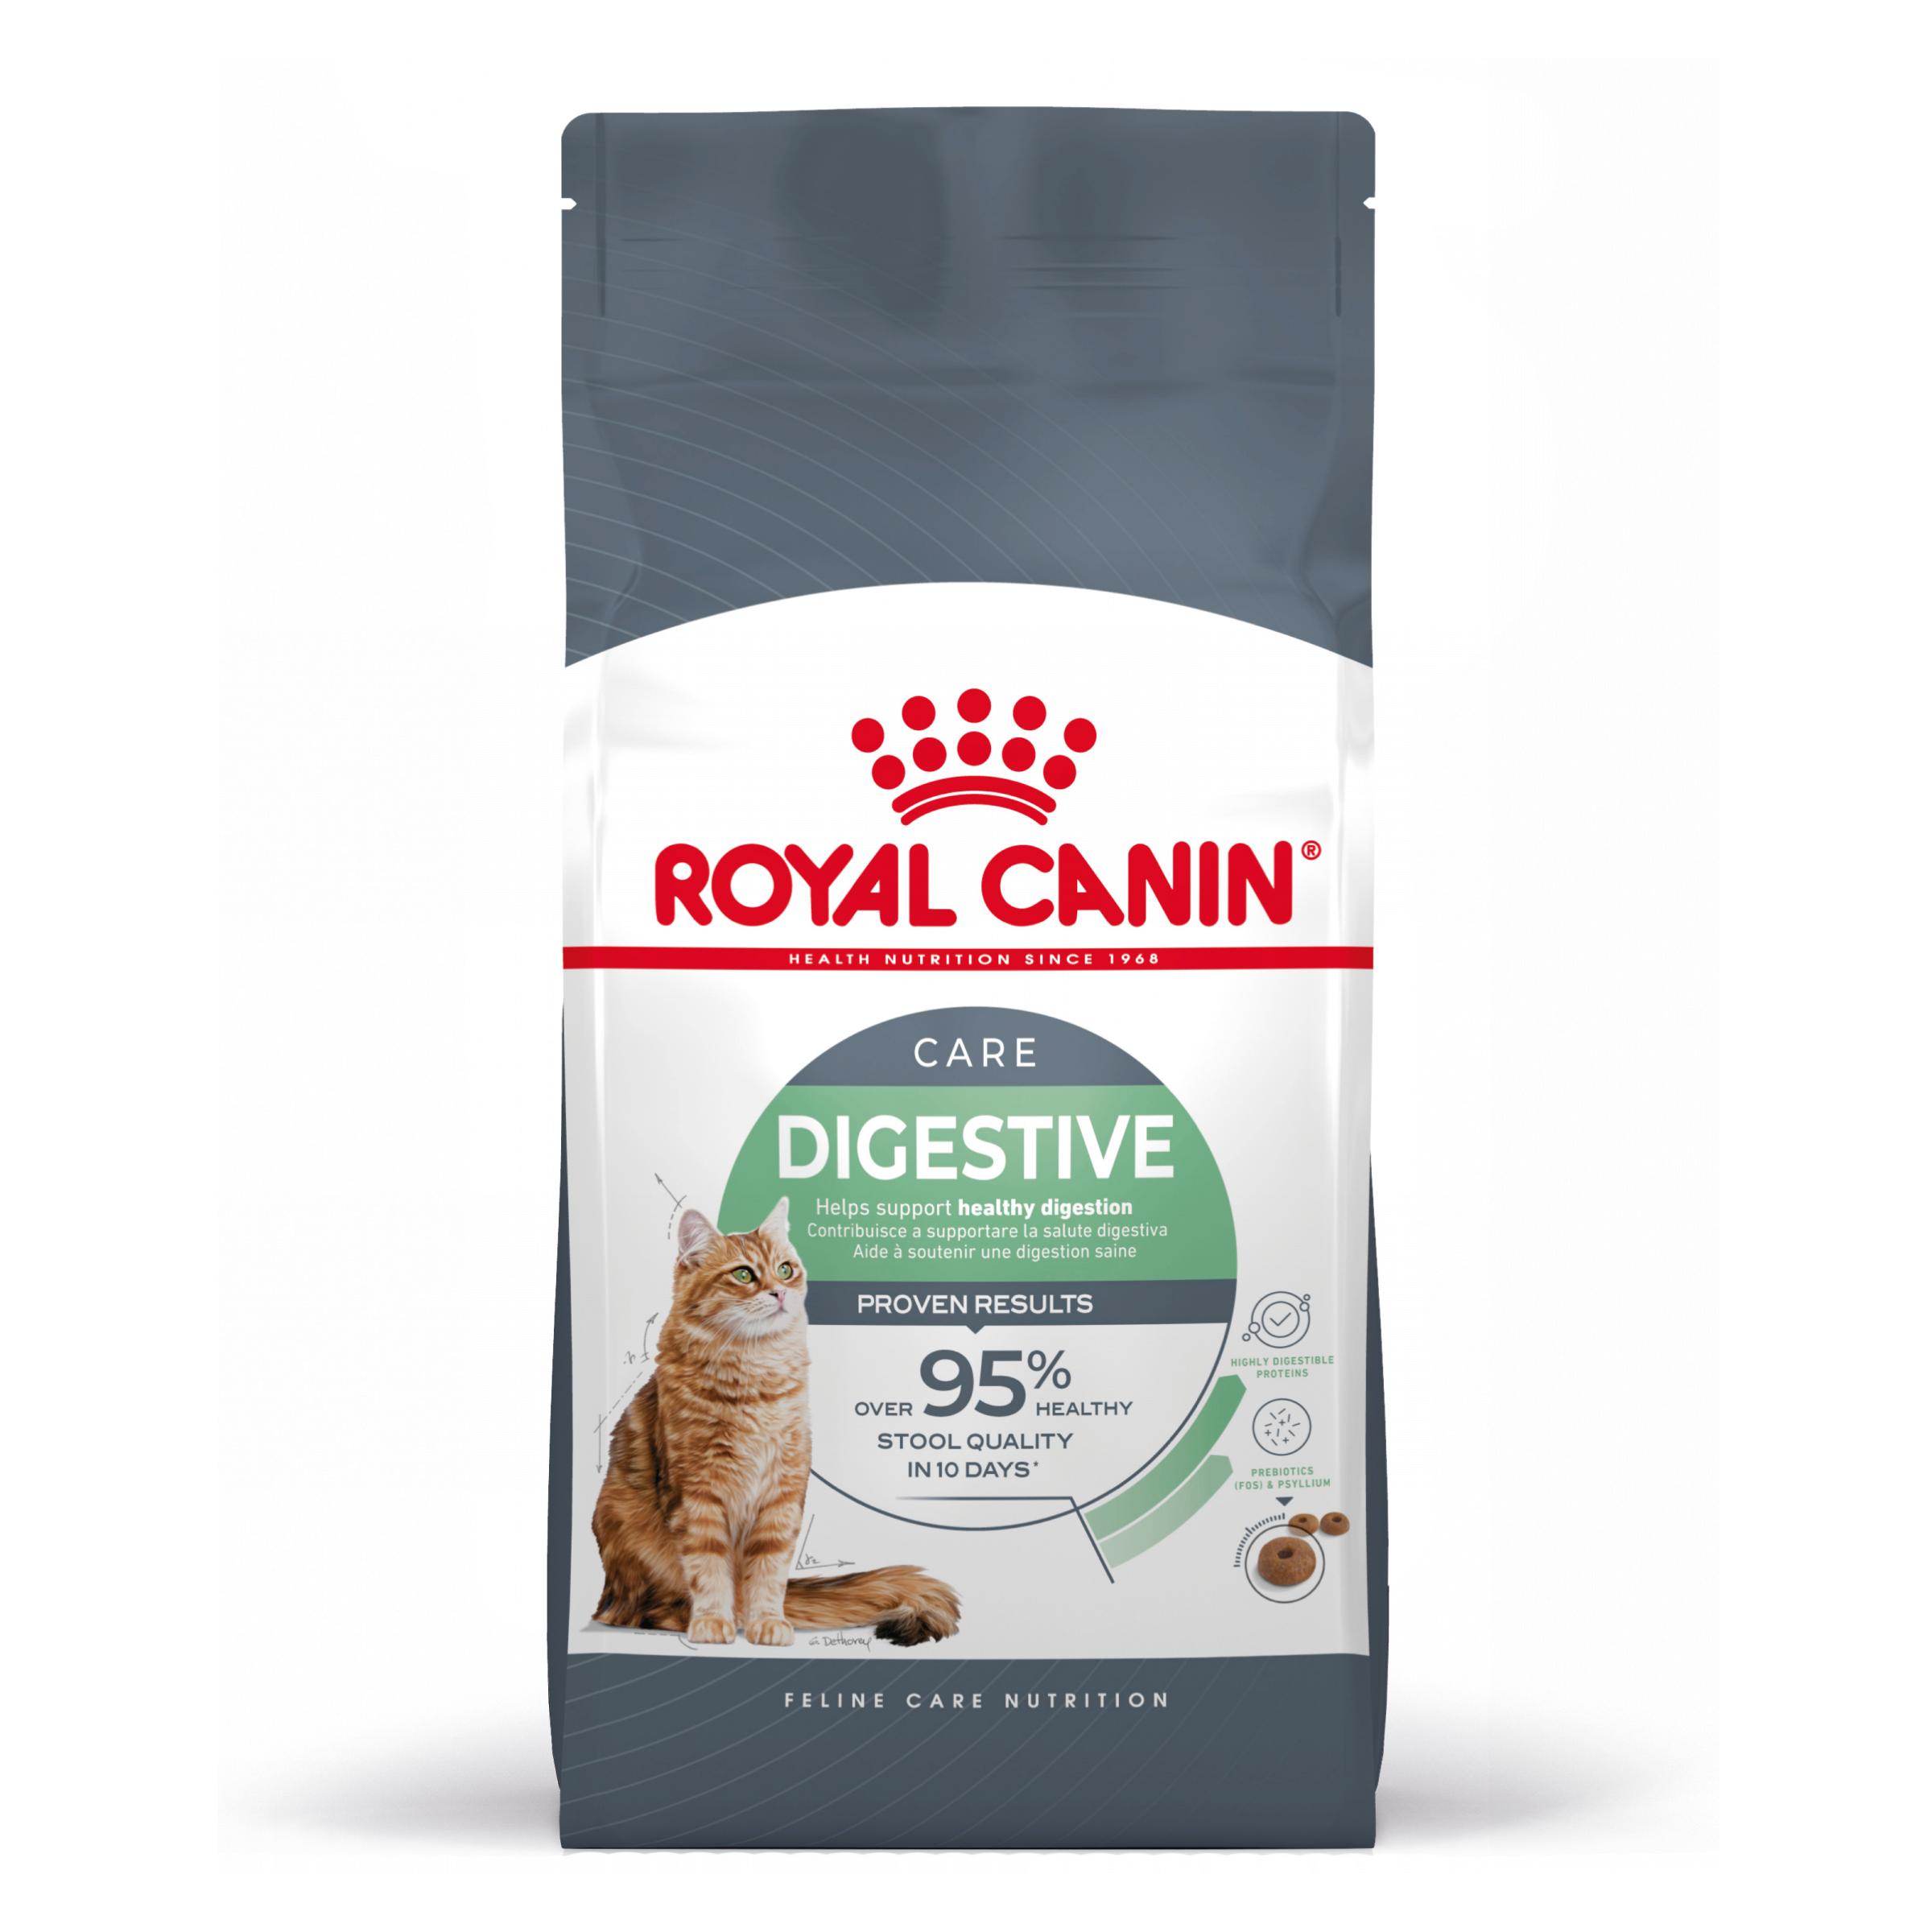 Royal Canin Digestive Care - Aliment pour chats adultes. - Recommandé pour aider à soutenir la santé digestive - 400g